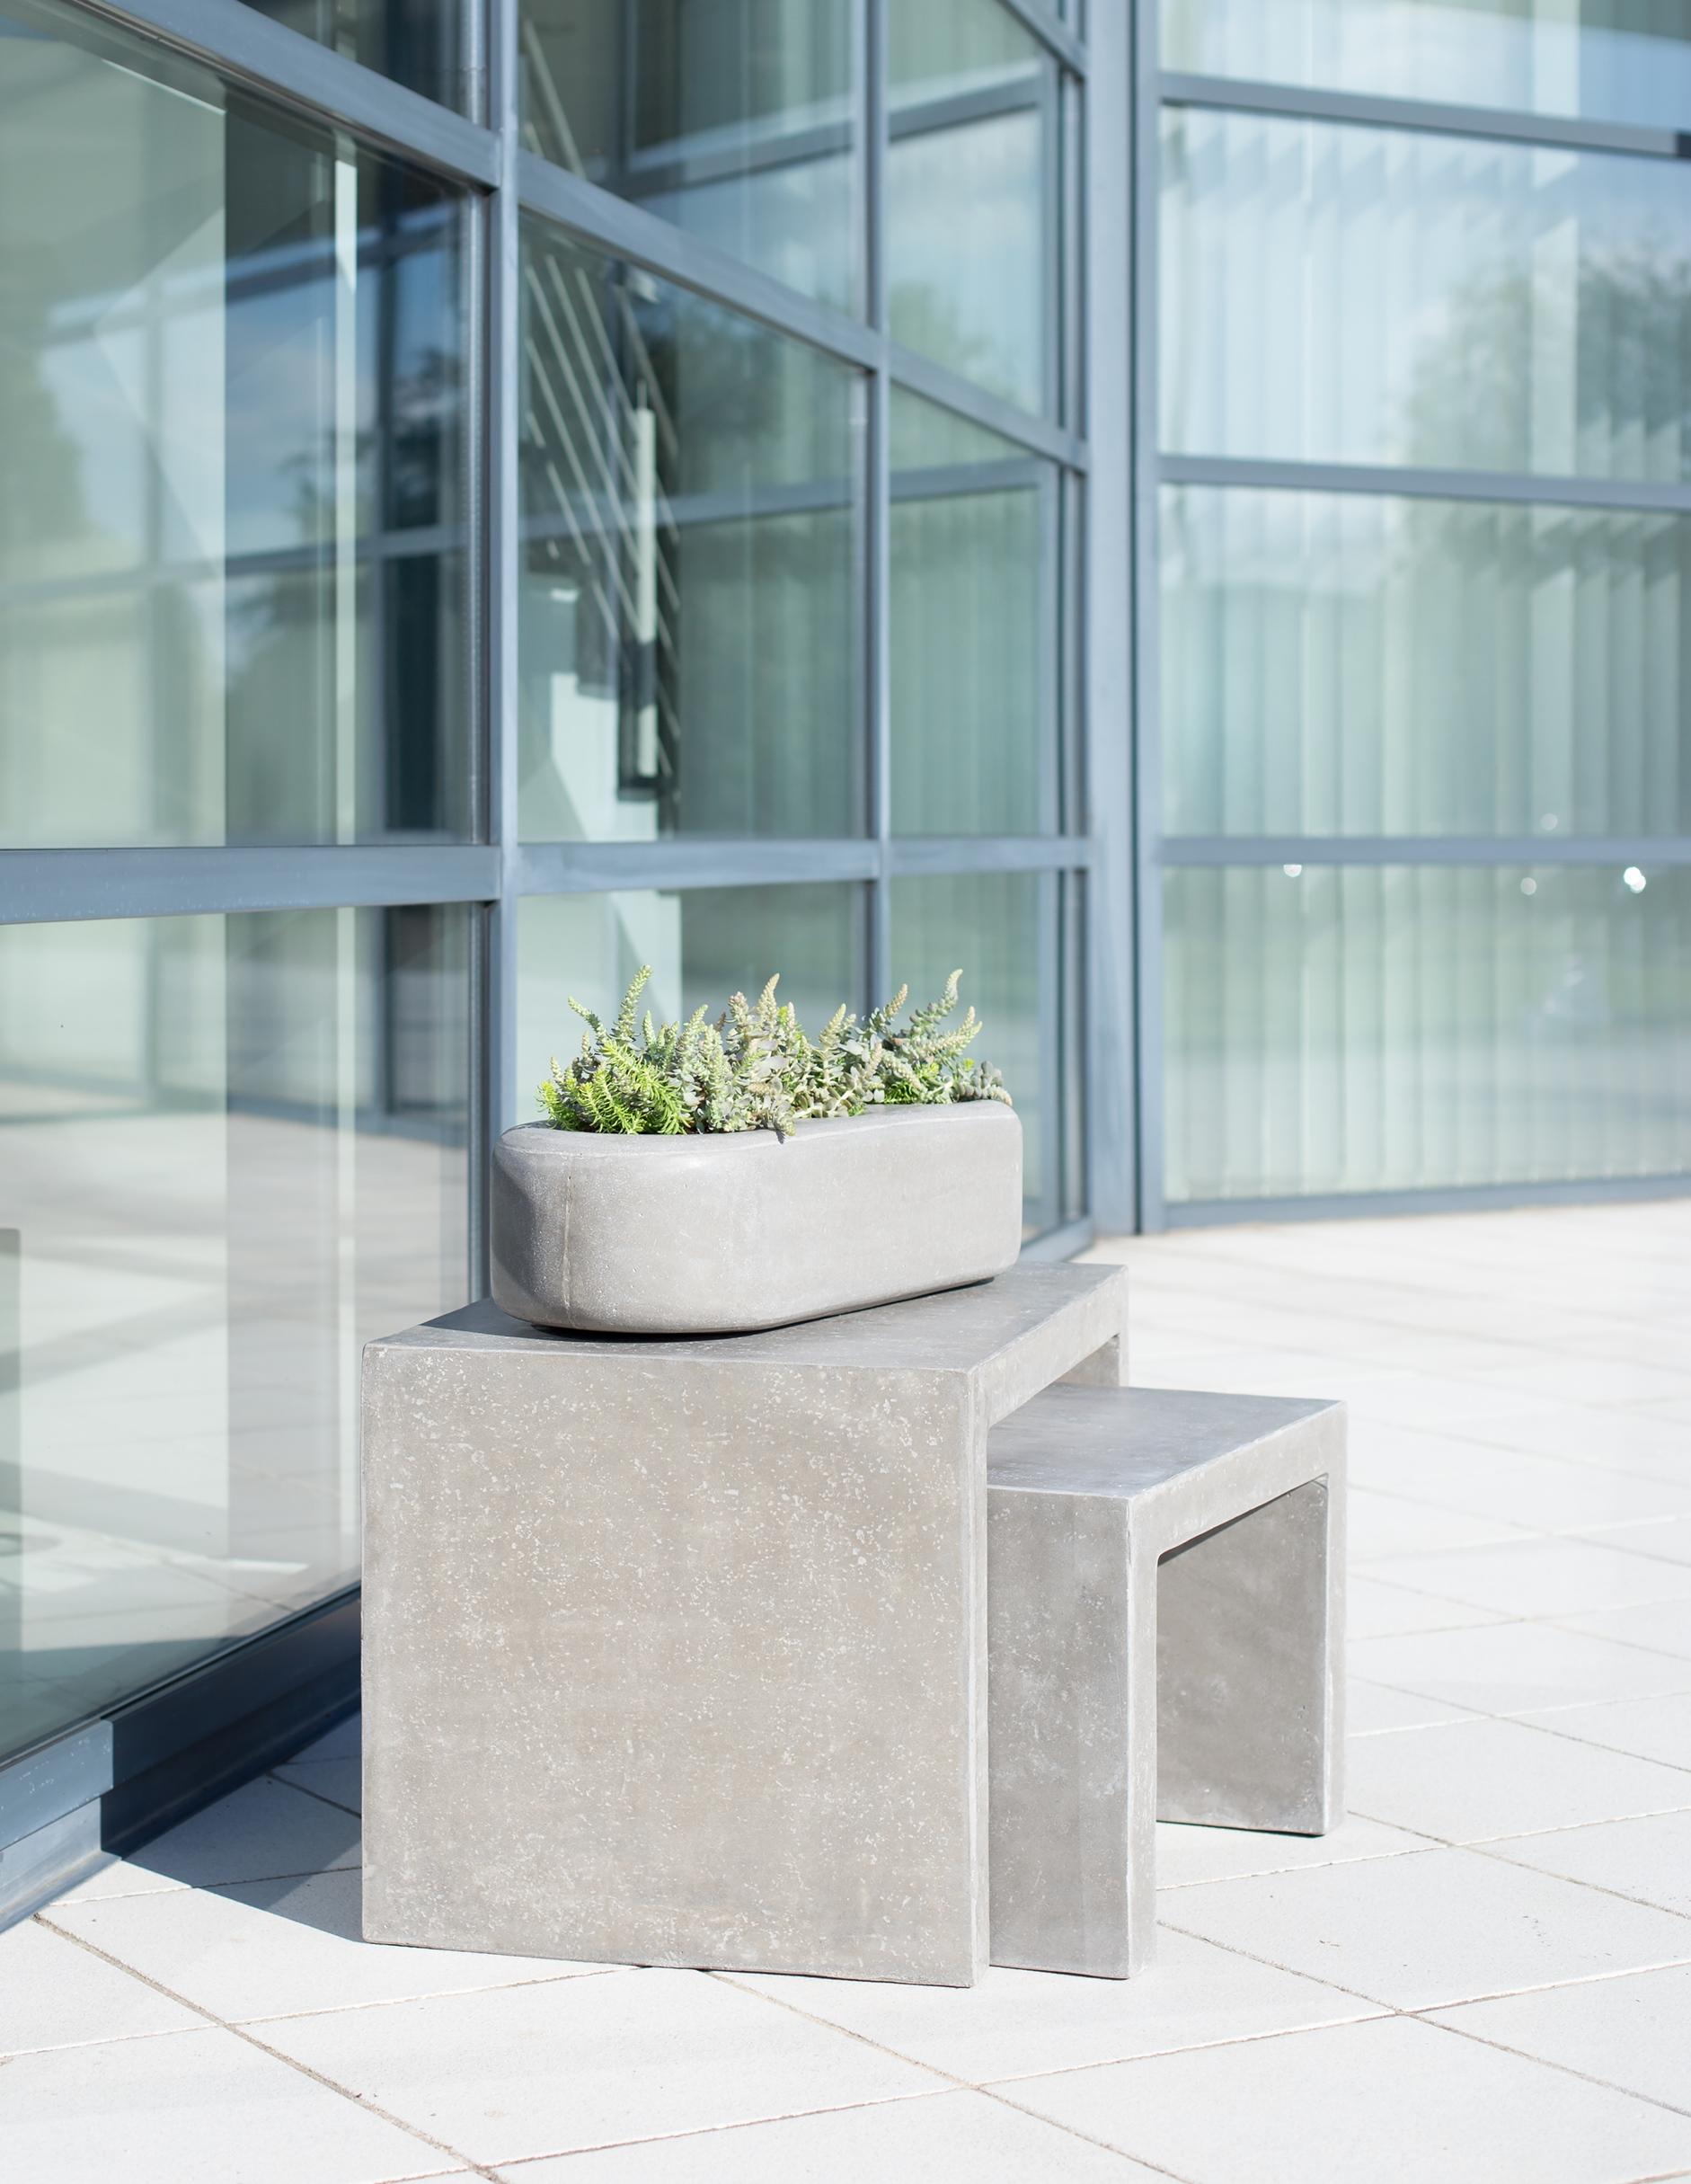 Moderne Beton Konsole #bauhausstil #terrasse #konsole #minimalistisch #betonmöbel #terrassentisch ©fleur ami